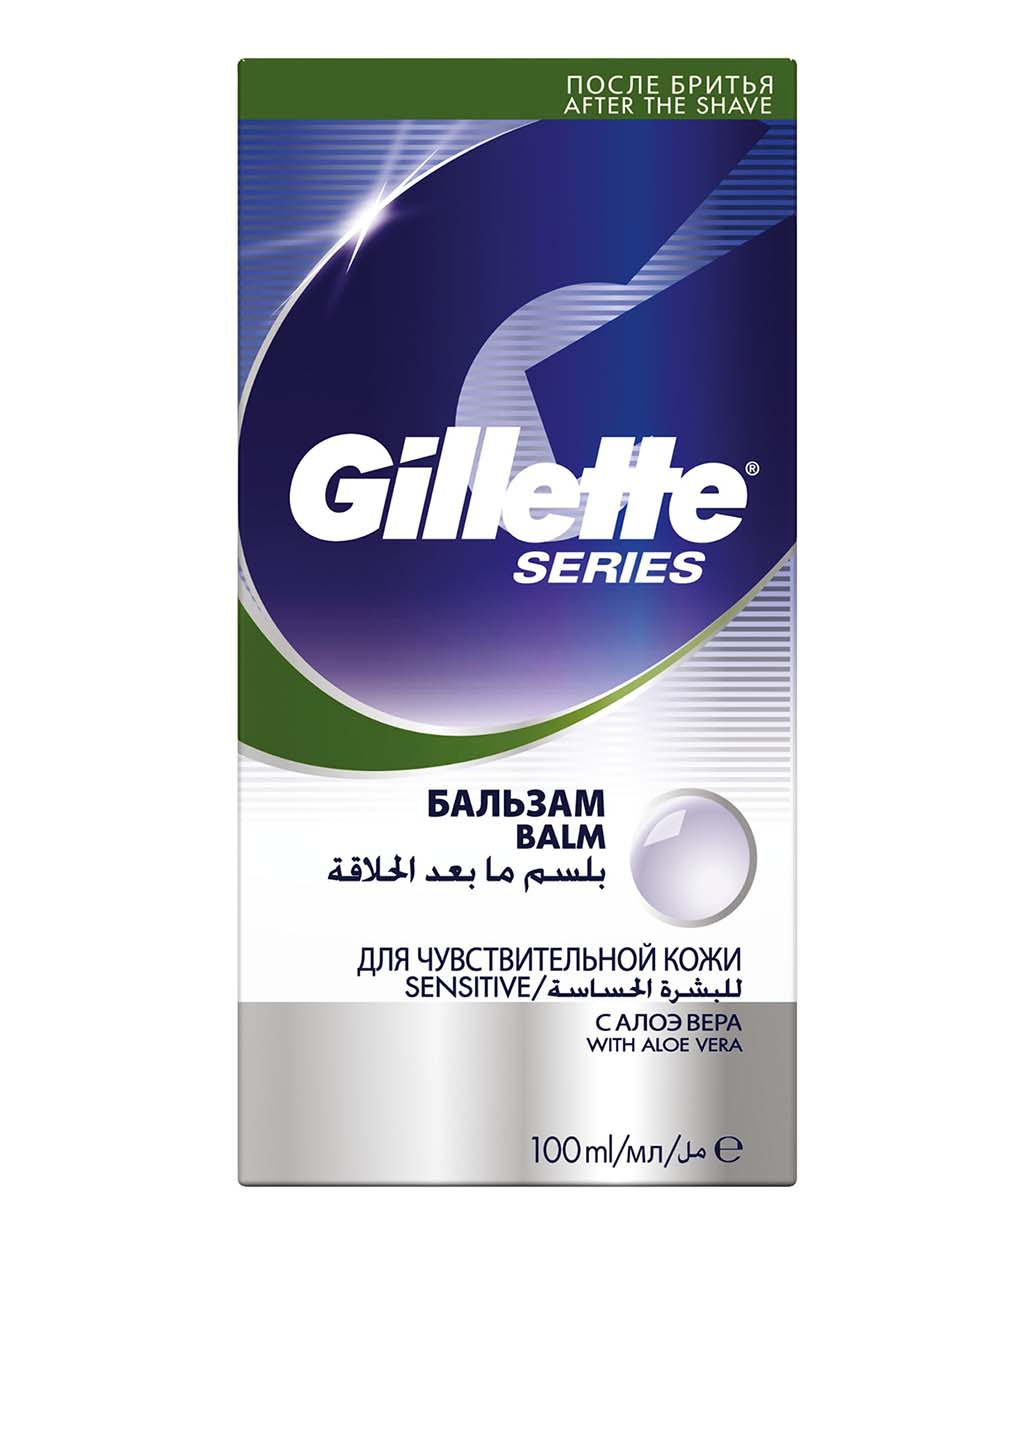 Бальзам после бритья Sens Skin, 100 мл Gillette (8937301)